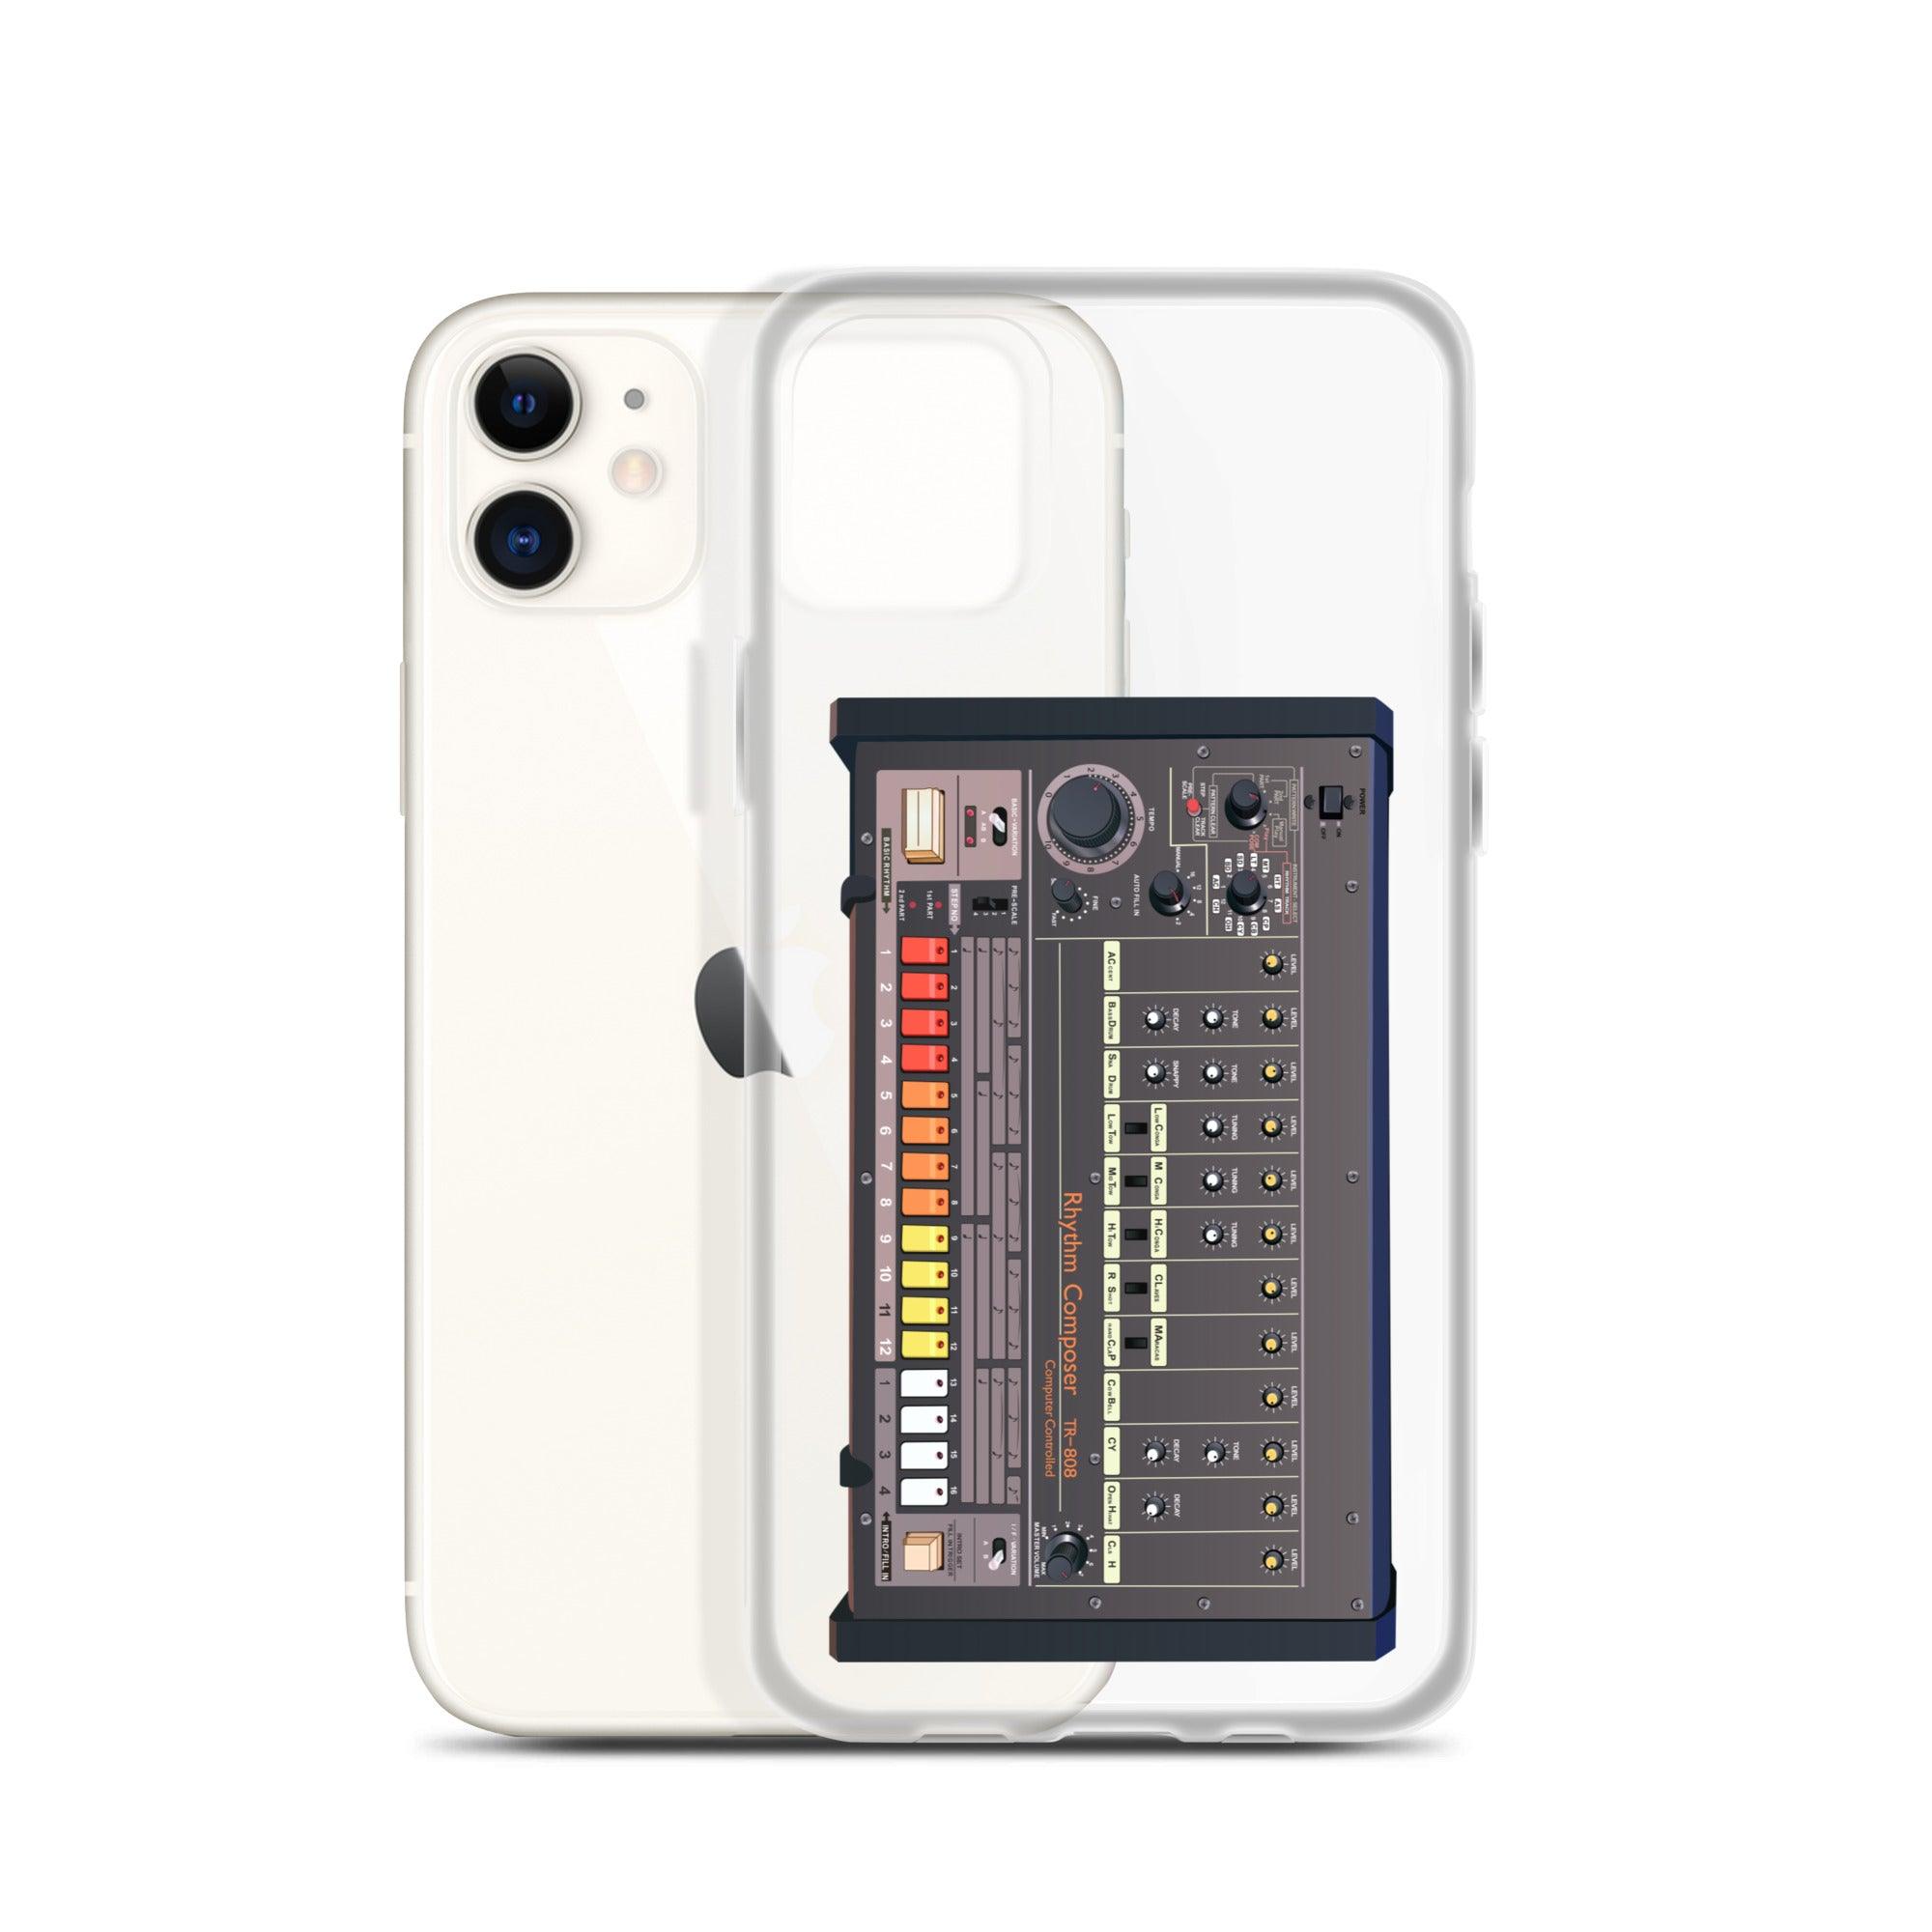 Roland TR-808 Rhythm Composer Artist Rendition | Drum Machine |Clear Case for iPhone® - Tedeschi Studio, LLC.